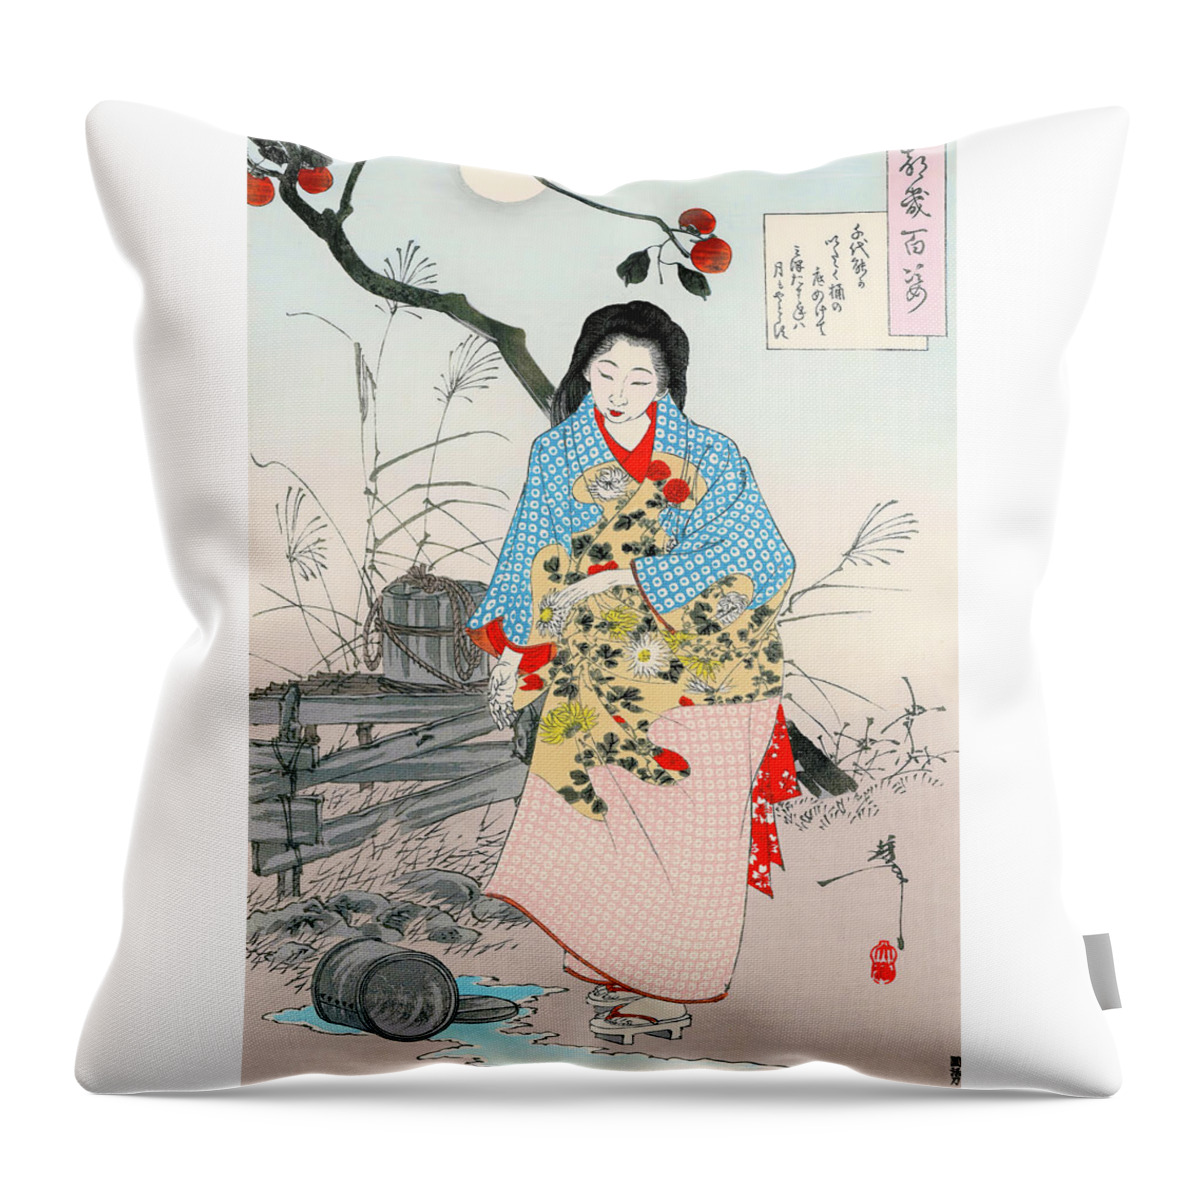 Tsukioka Throw Pillow featuring the painting Top Quality Art - ADACHI CHIYONO by Tsukioka Yoshitoshi